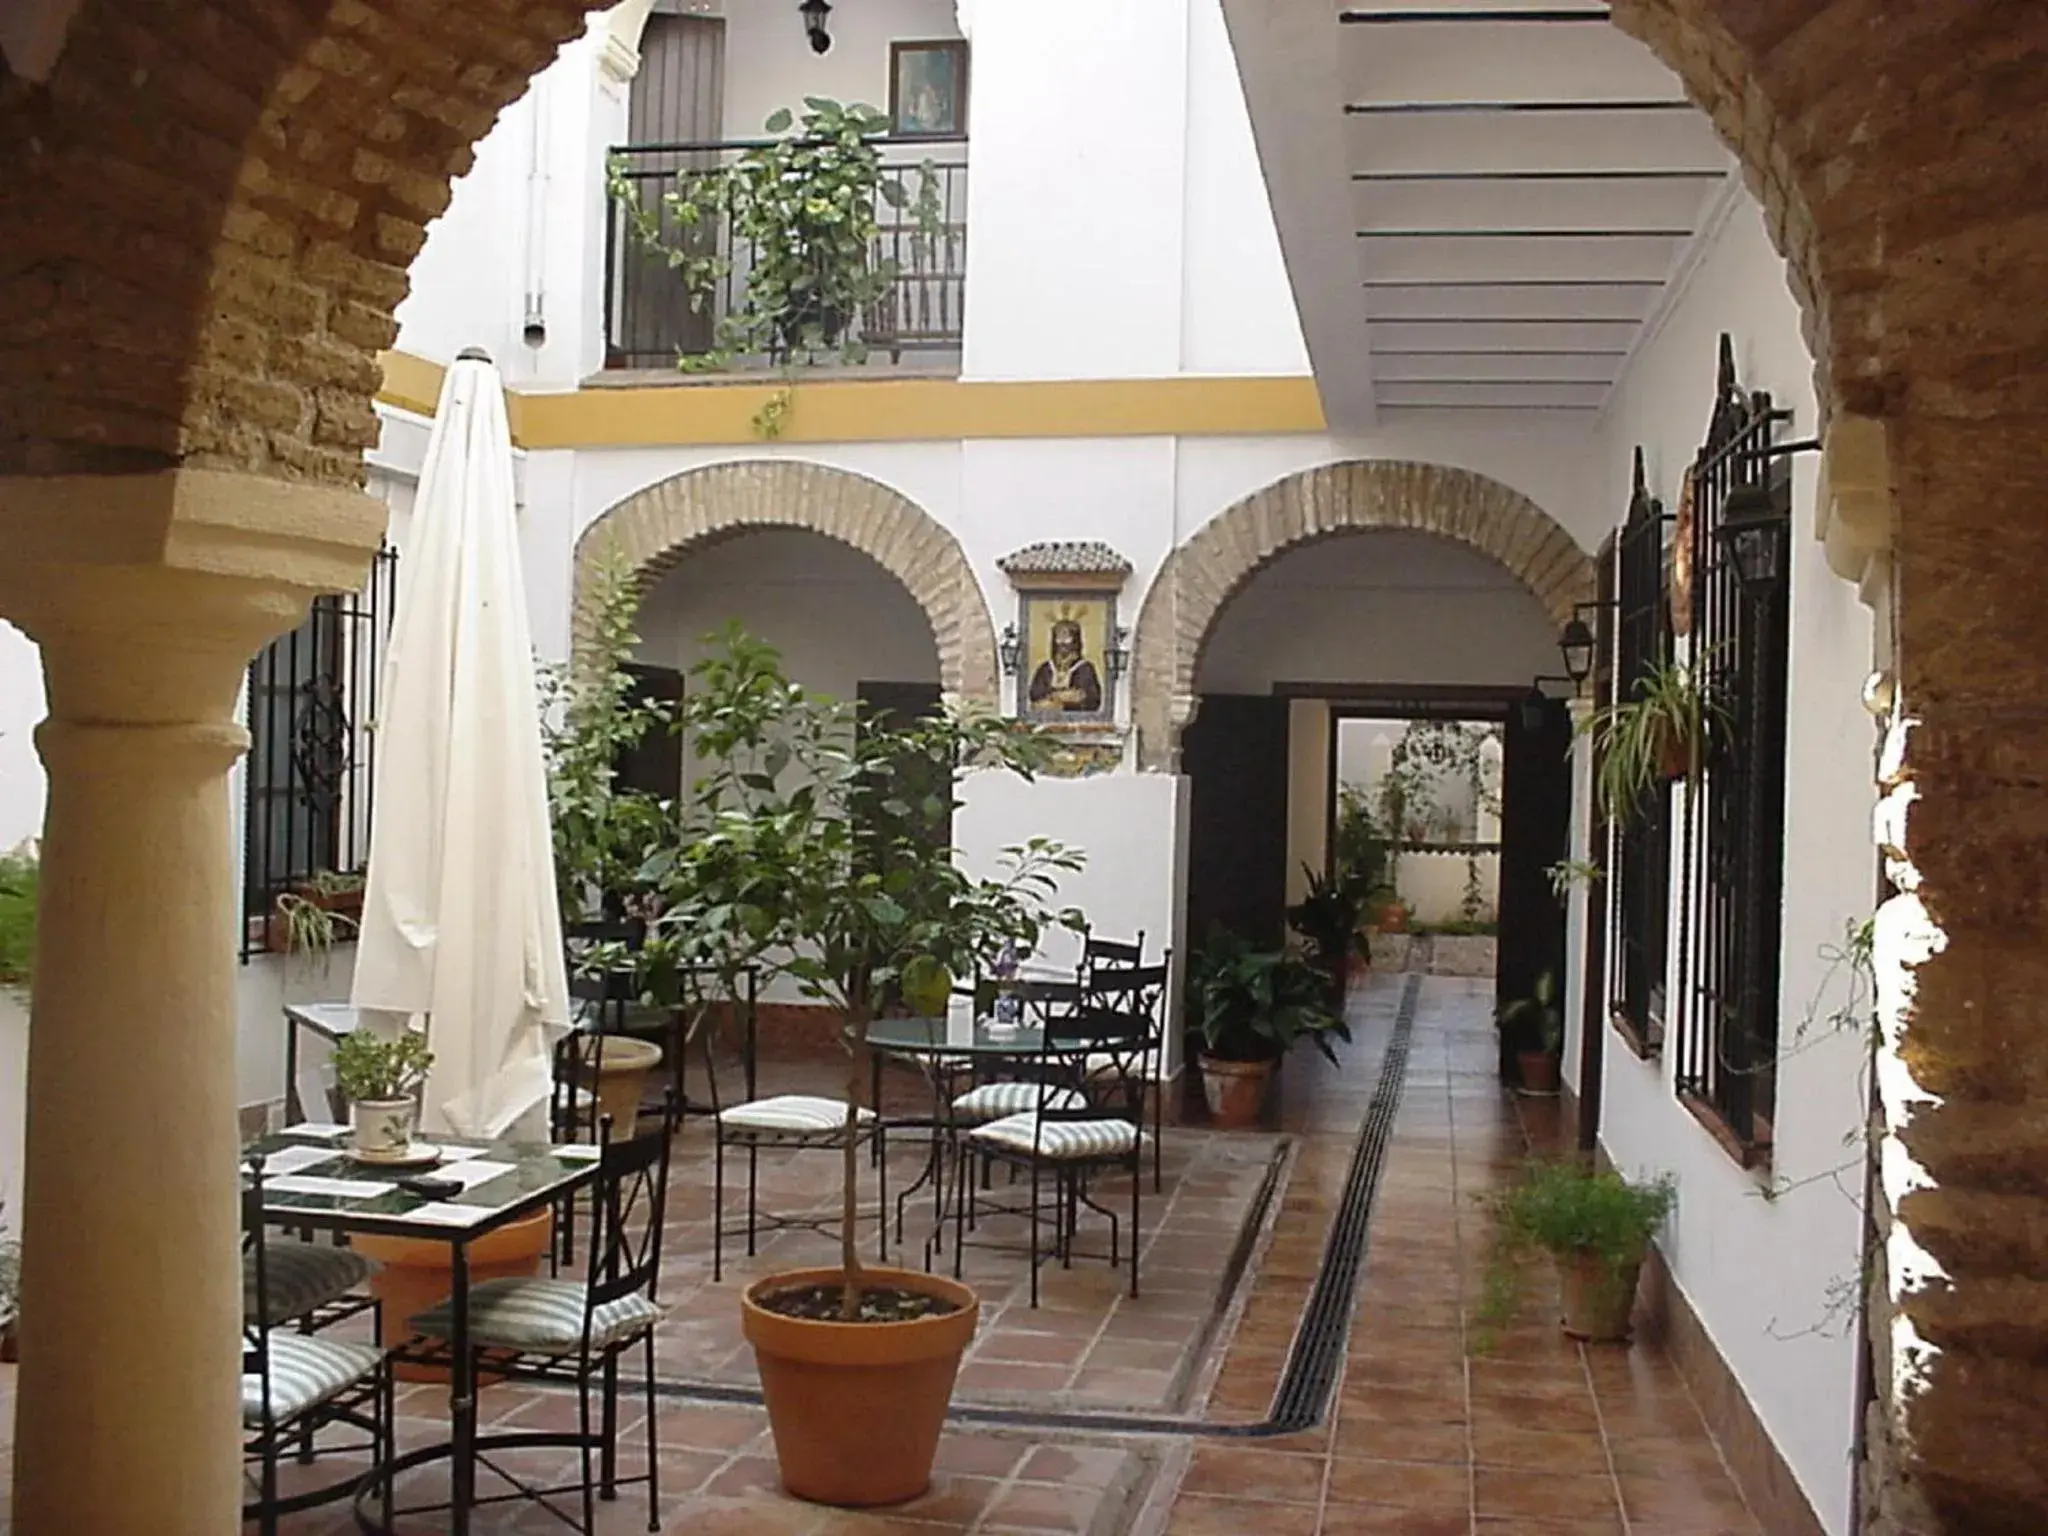 Property building, Restaurant/Places to Eat in Casa de los Naranjos